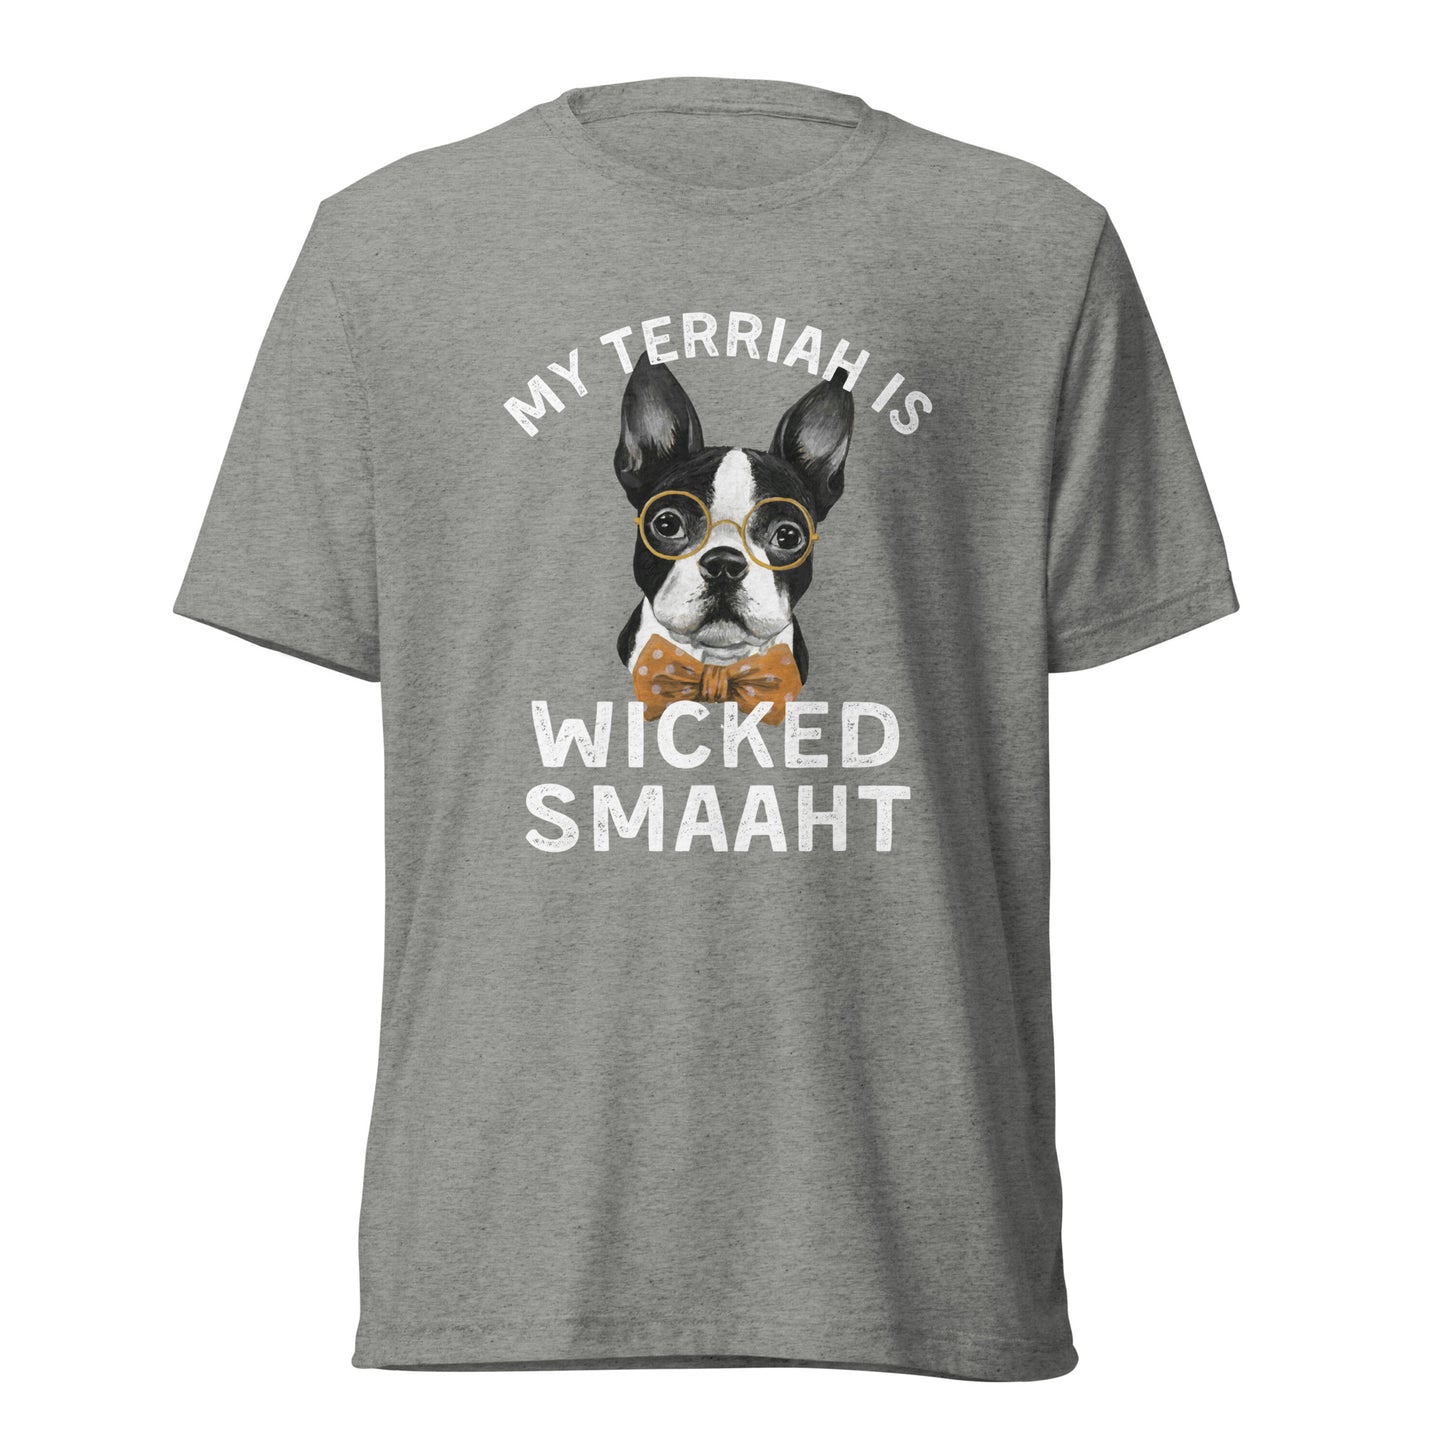 Wicked Smaaht Short sleeve t-shirt